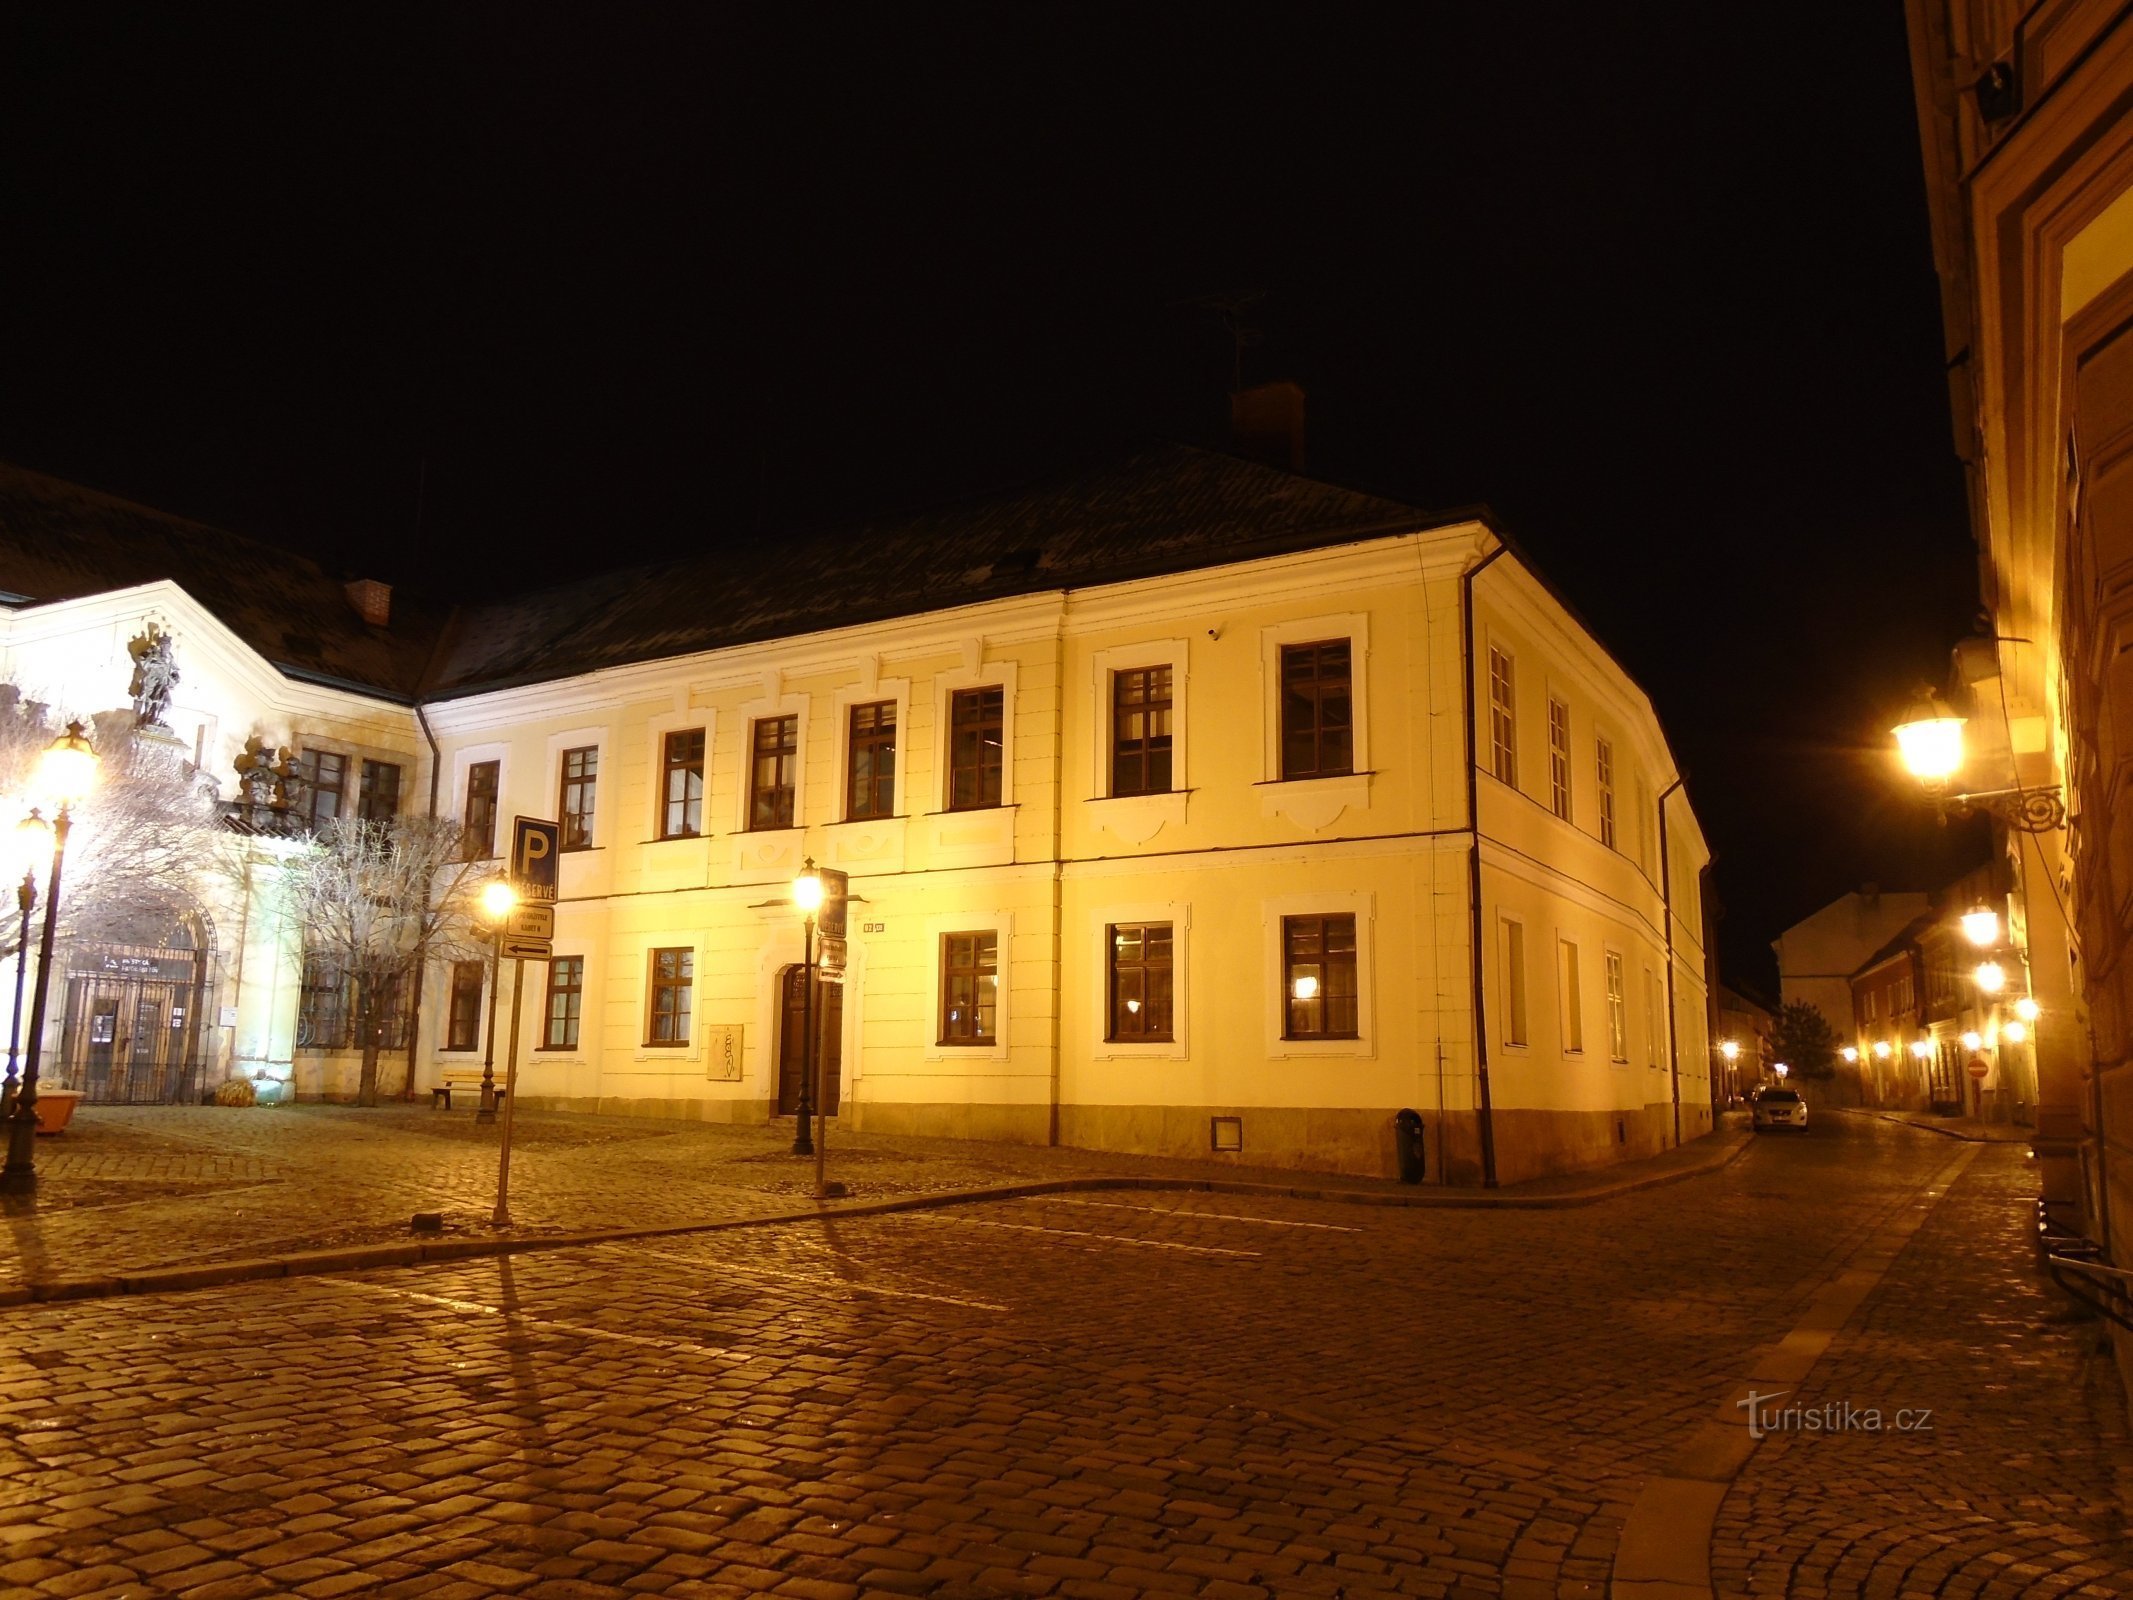 Al castello n. 91 (Hradec Králové, 10.12.2017/XNUMX/XNUMX)